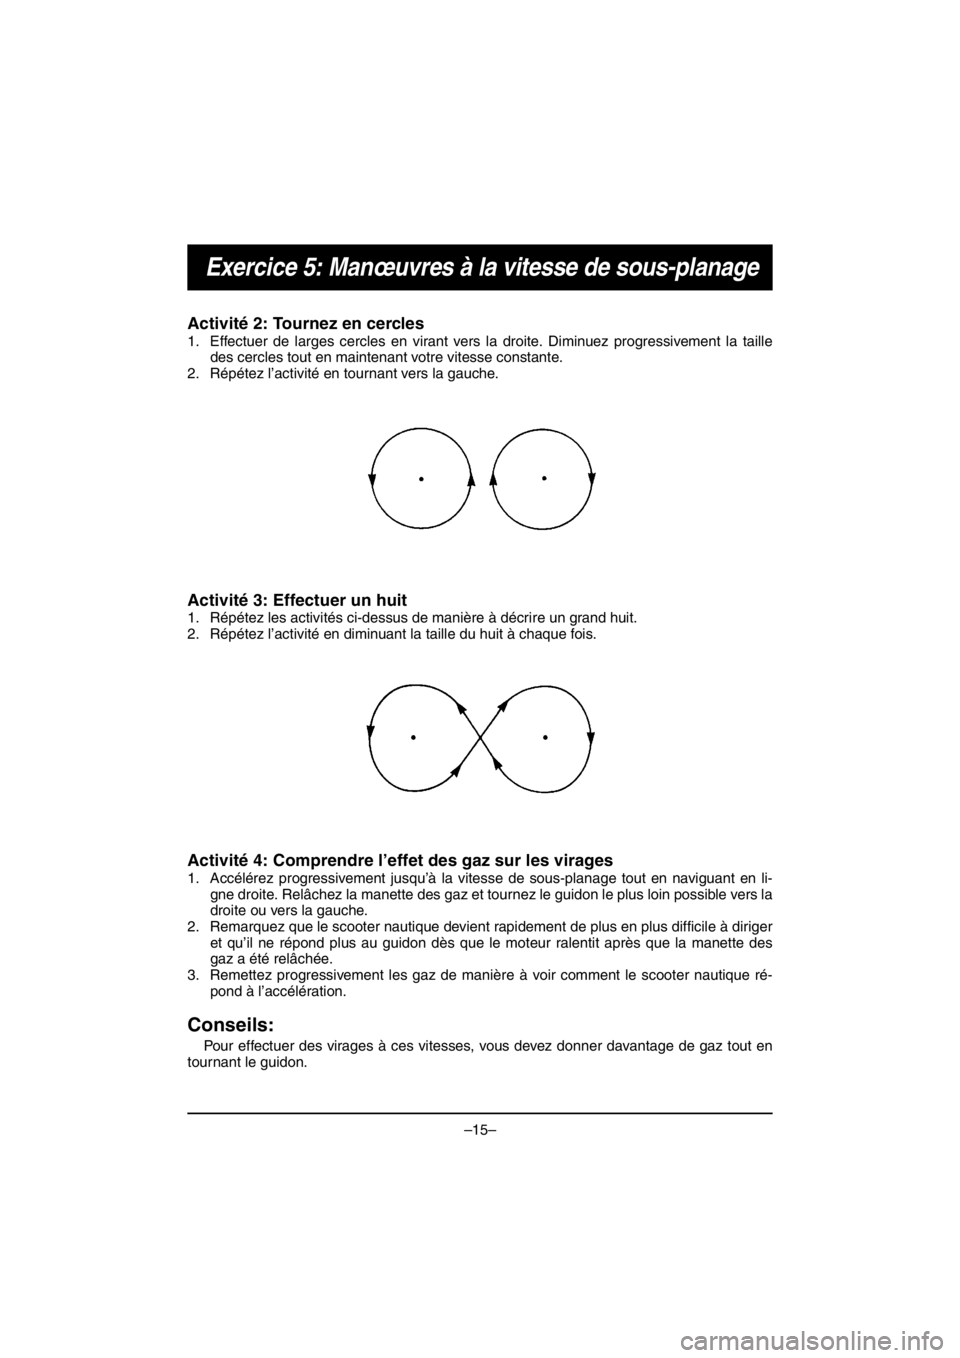 YAMAHA V1 2016 Service Manual –15–
Exercice 5: Manœuvres à la vitesse de sous-planage
Activité 2: Tournez en cercles 
1. Effectuer de larges cercles en virant vers la droite. Diminuez progressivement la taille
des cercles t